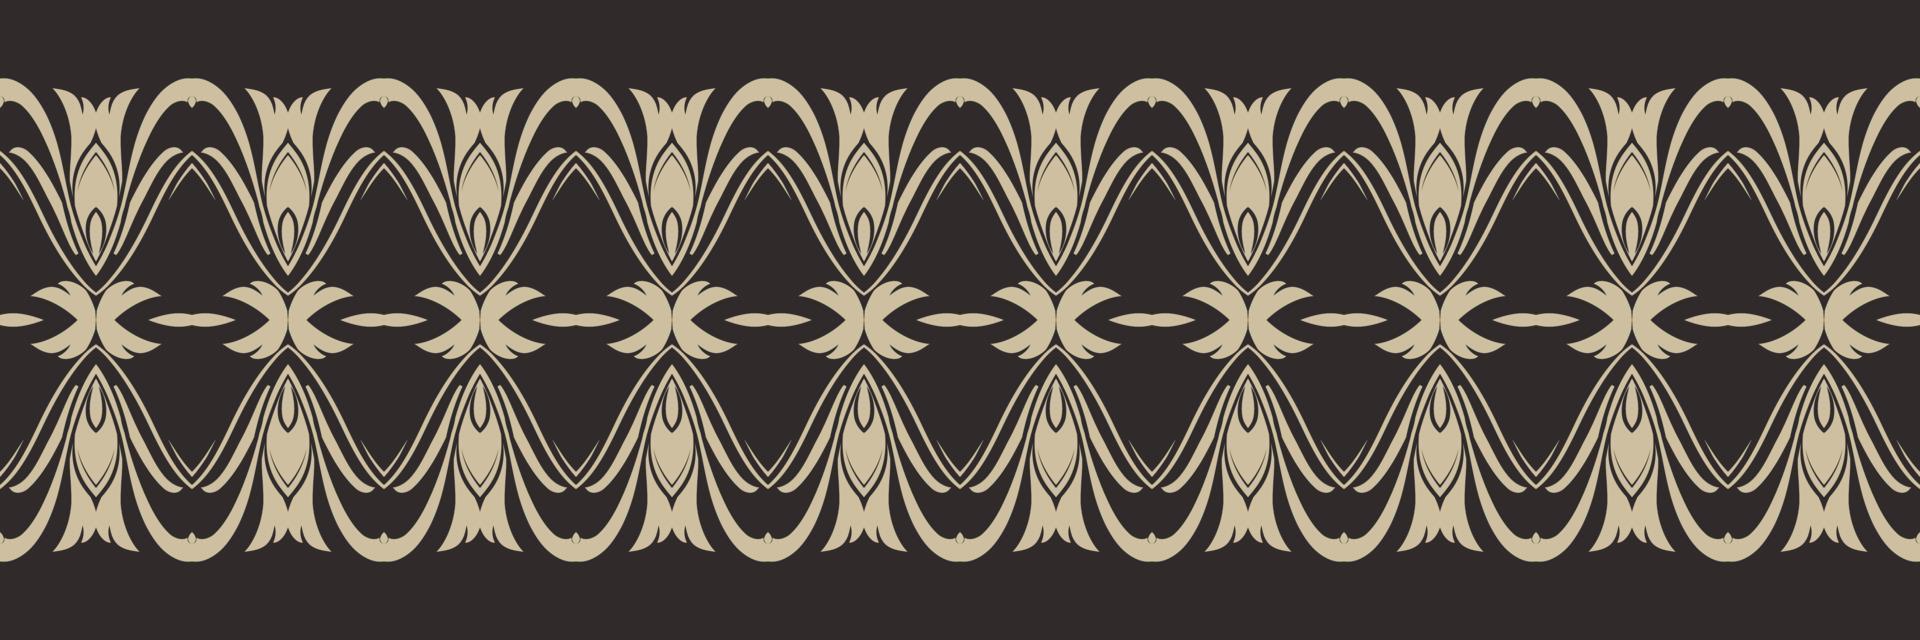 batik textil motivo ikat diseños de patrones sin fisuras diseño vectorial digital para imprimir saree kurti borde de tela símbolos de pincel muestras ropa de fiesta vector